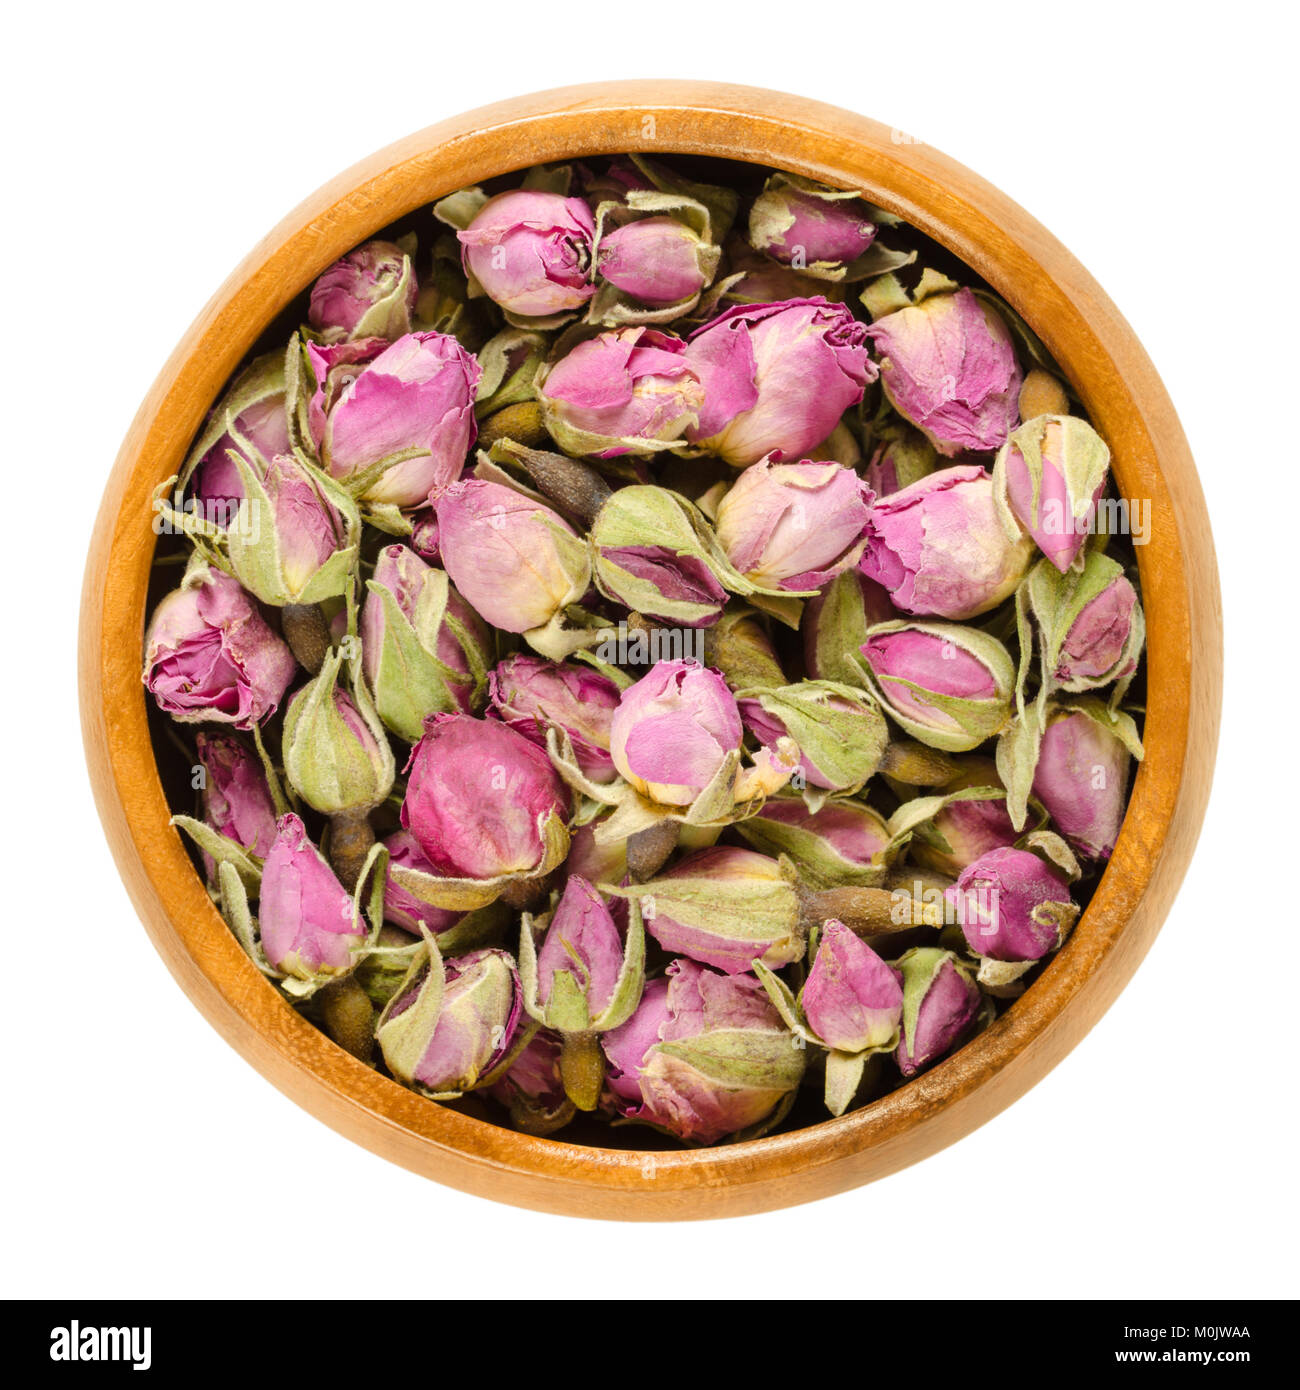 Boutons de rose séchés dans un bol en bois. Plantes du genre Rosa. Utilisé comme décoration, comme parfum, pour les thés et parfums. Macro photo alimentaire isolé. Banque D'Images